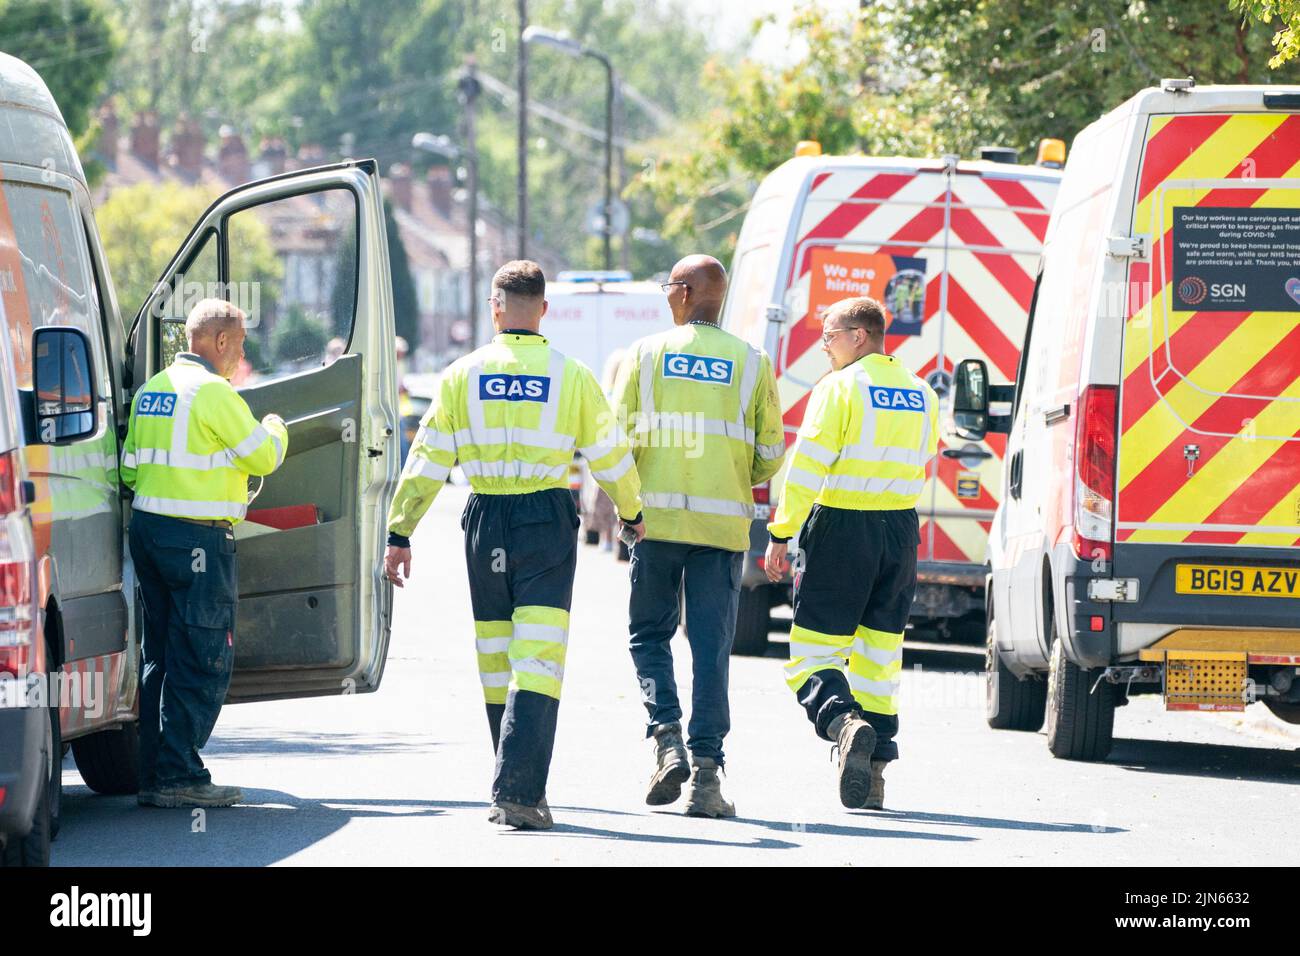 Gasingenieure am Ort einer Explosion an der Galpin's Road in Thornton Heath, Süd-London. Der Londoner Krankenwagen hat bestätigt, dass ein Kind gestorben ist und drei Personen im Krankenhaus sind, nachdem das Reihenhaus am Montag nach einer Explosion und einem Brand zusammengebrochen war. Bilddatum: Dienstag, 9. August 2022. Stockfoto